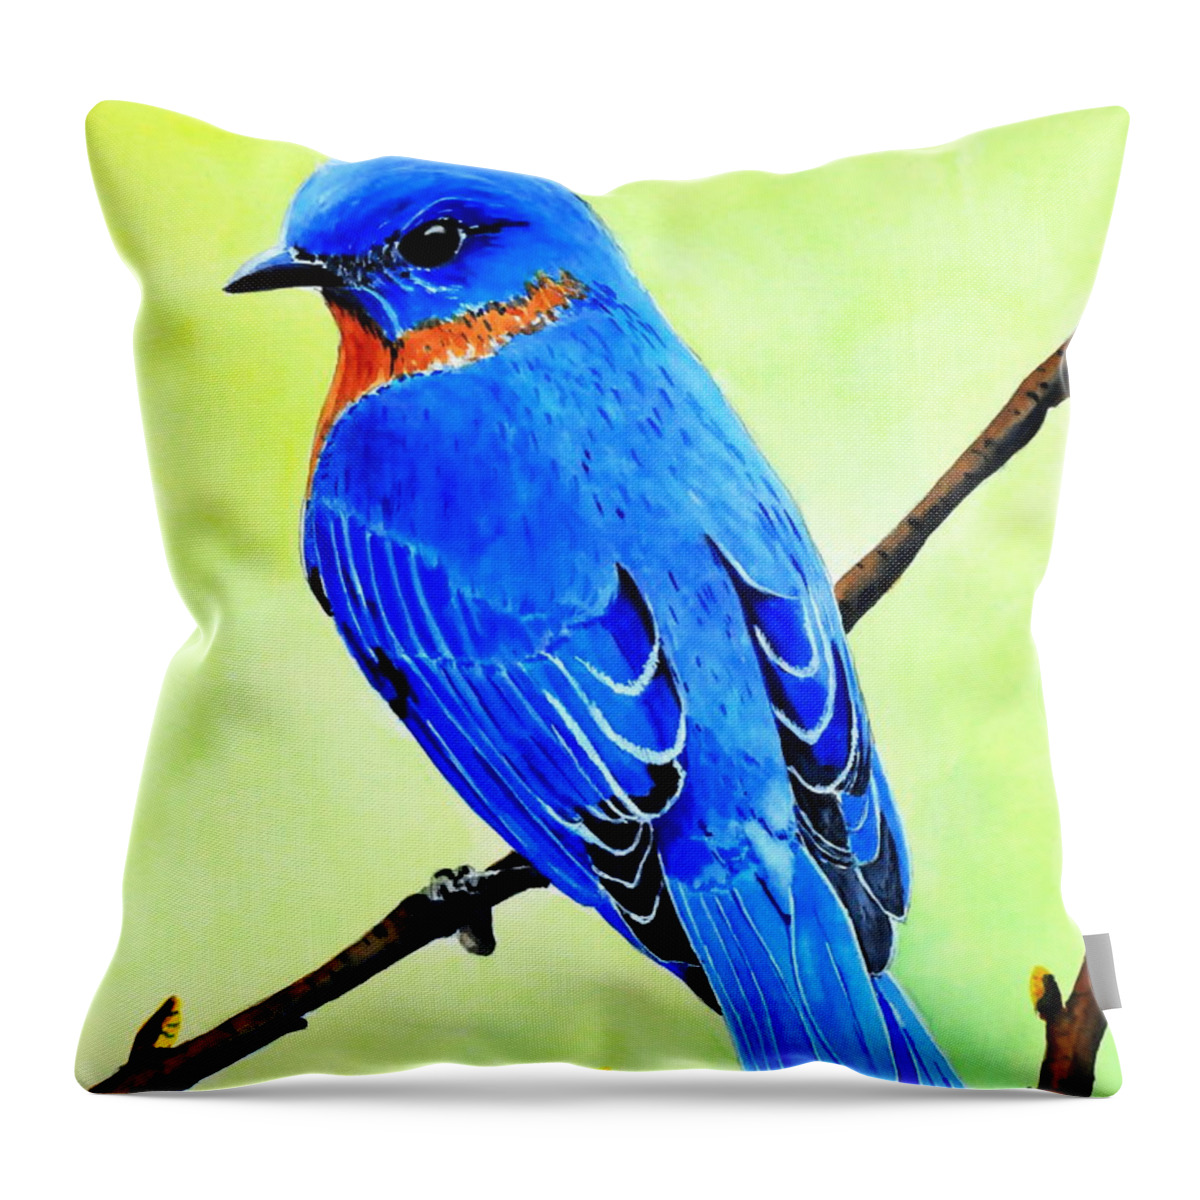 Bird Throw Pillow featuring the painting Bluebird Kingr by John W Walker